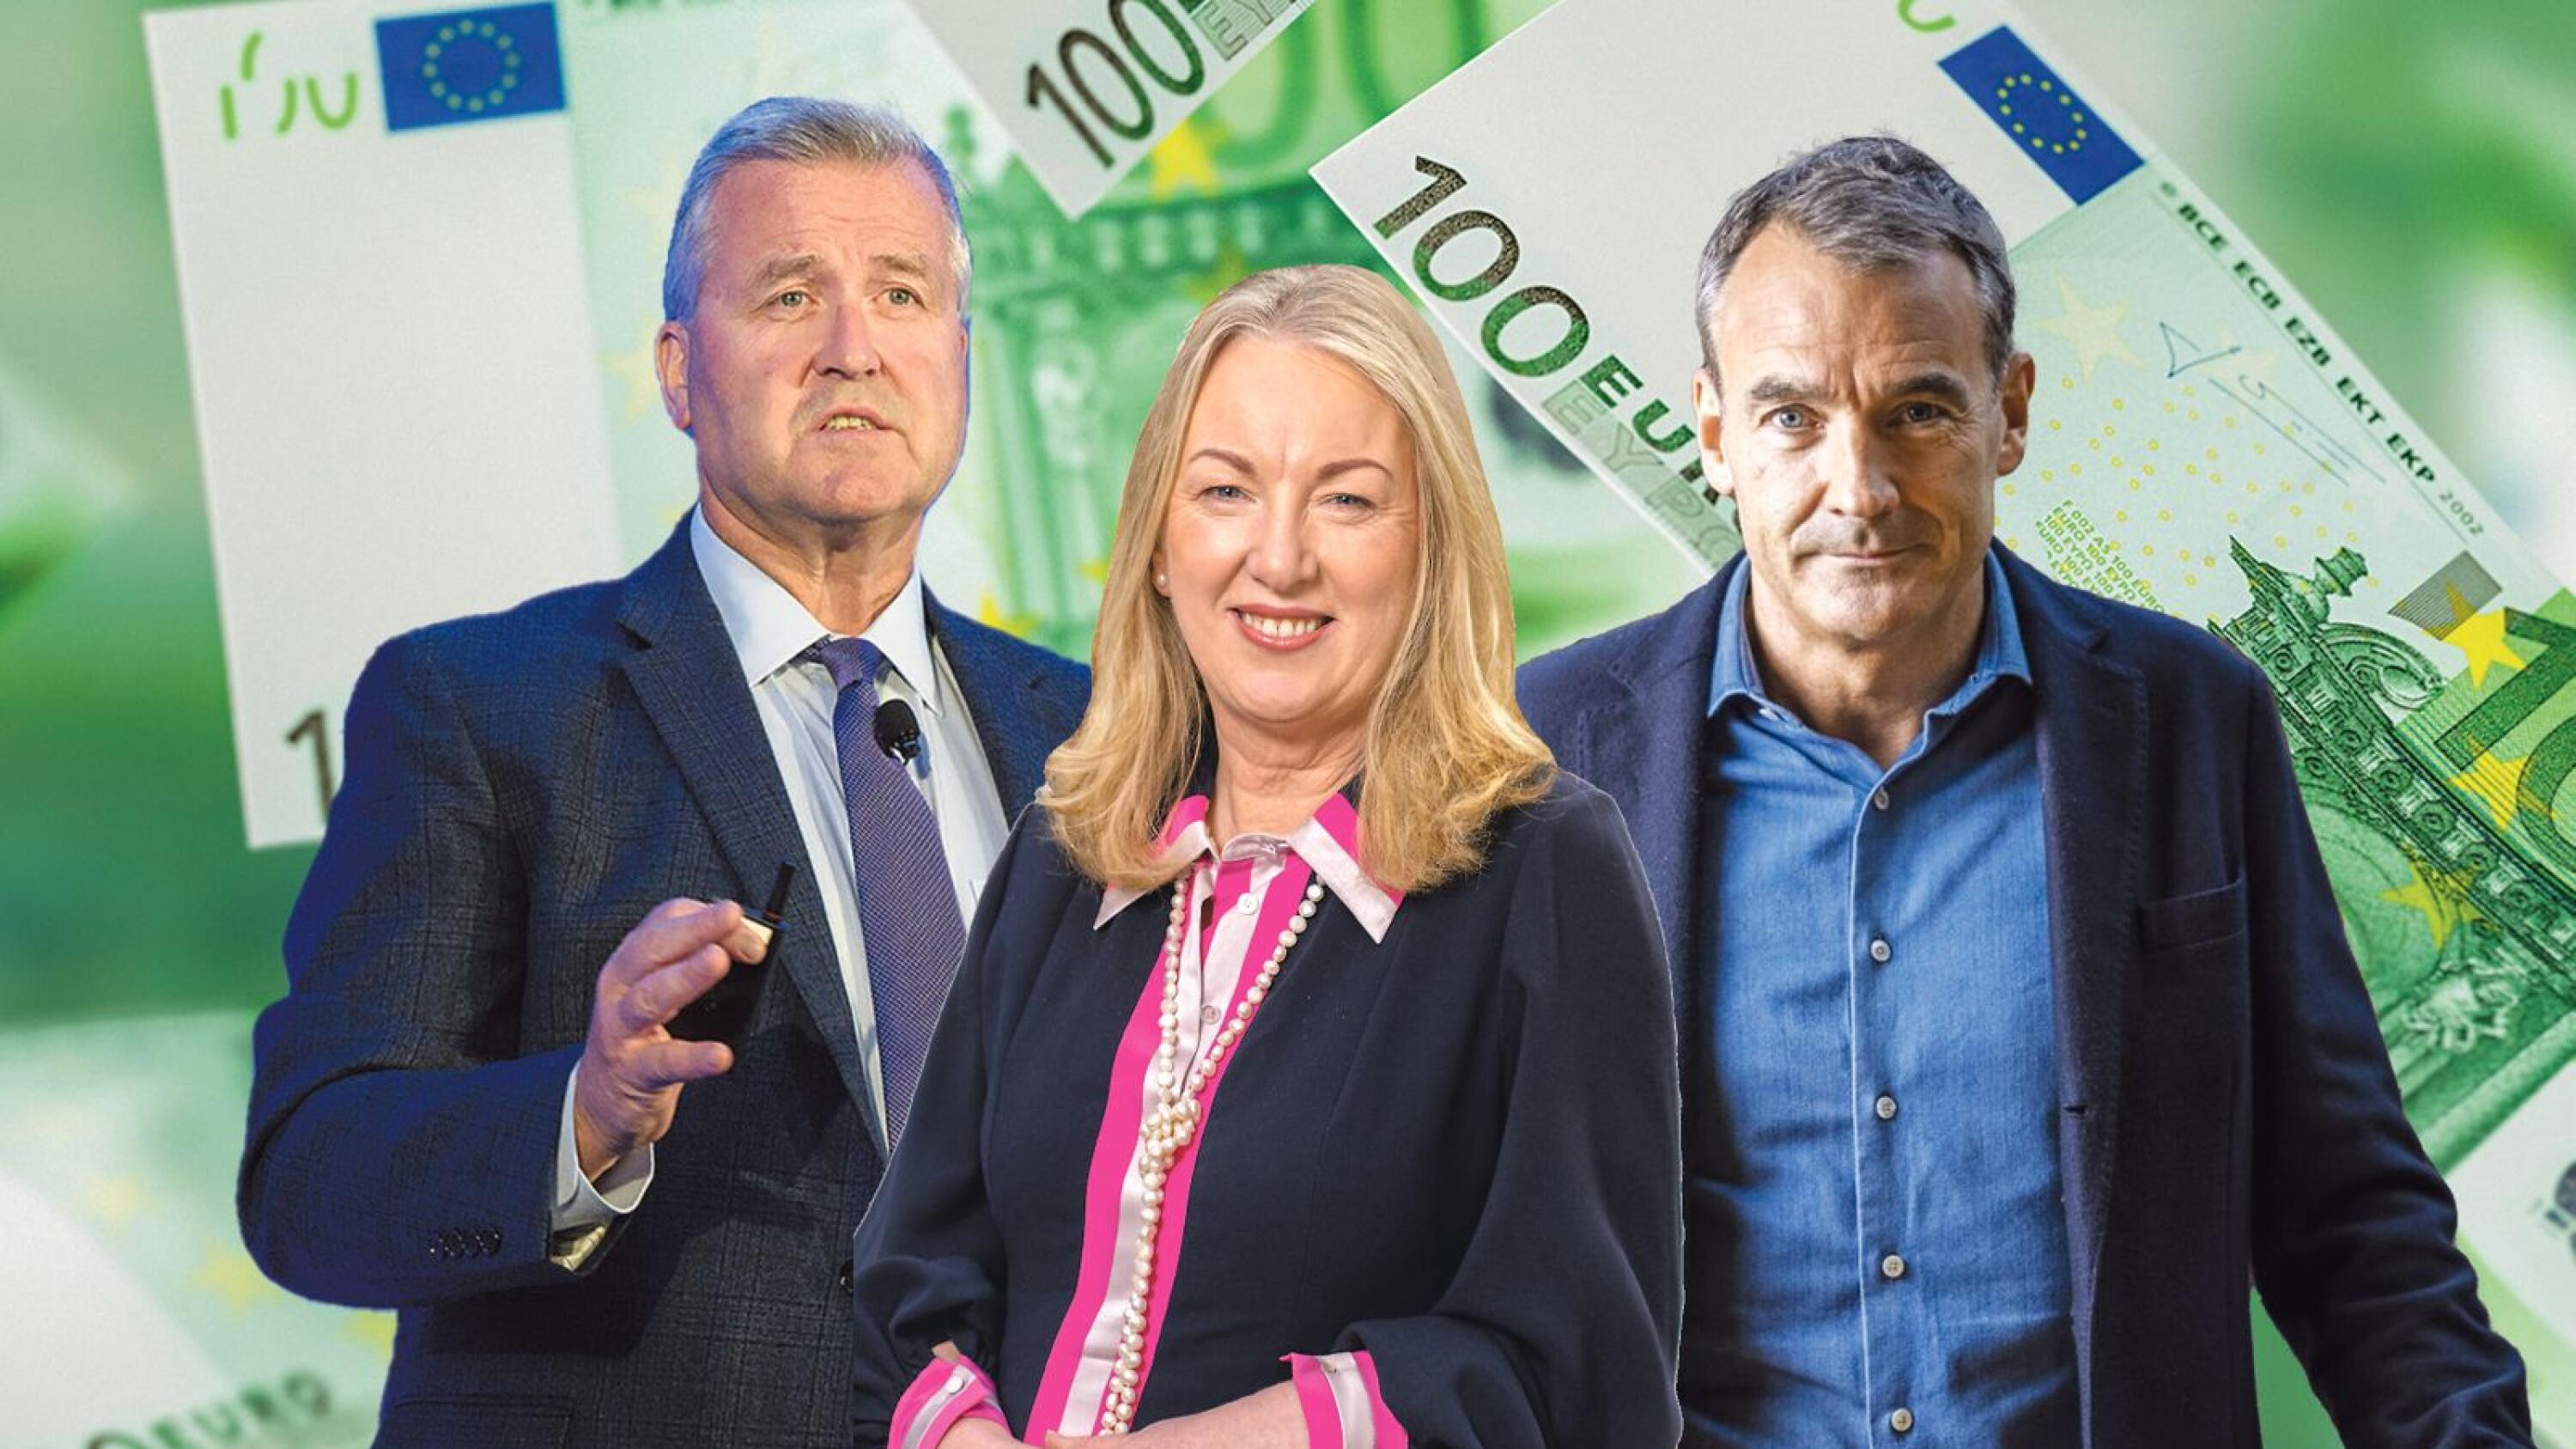 Le club des 100 millions d’euros – Les 30 meilleurs cadres irlandais bénéficient de salaires exceptionnels